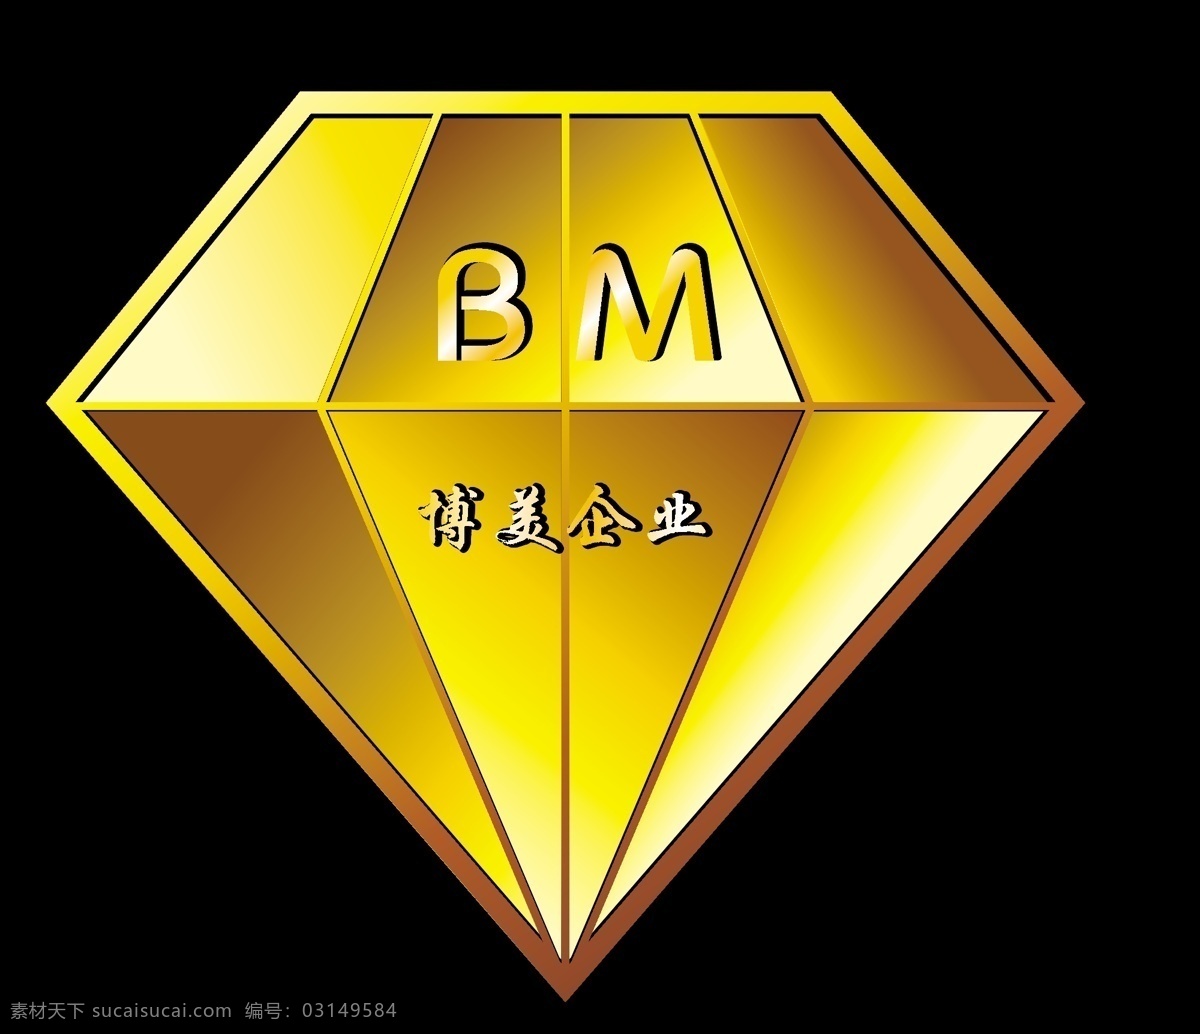 钻石商标 钻石 logo 博美企业 精美 矢量钻石 矢量素材 矢量